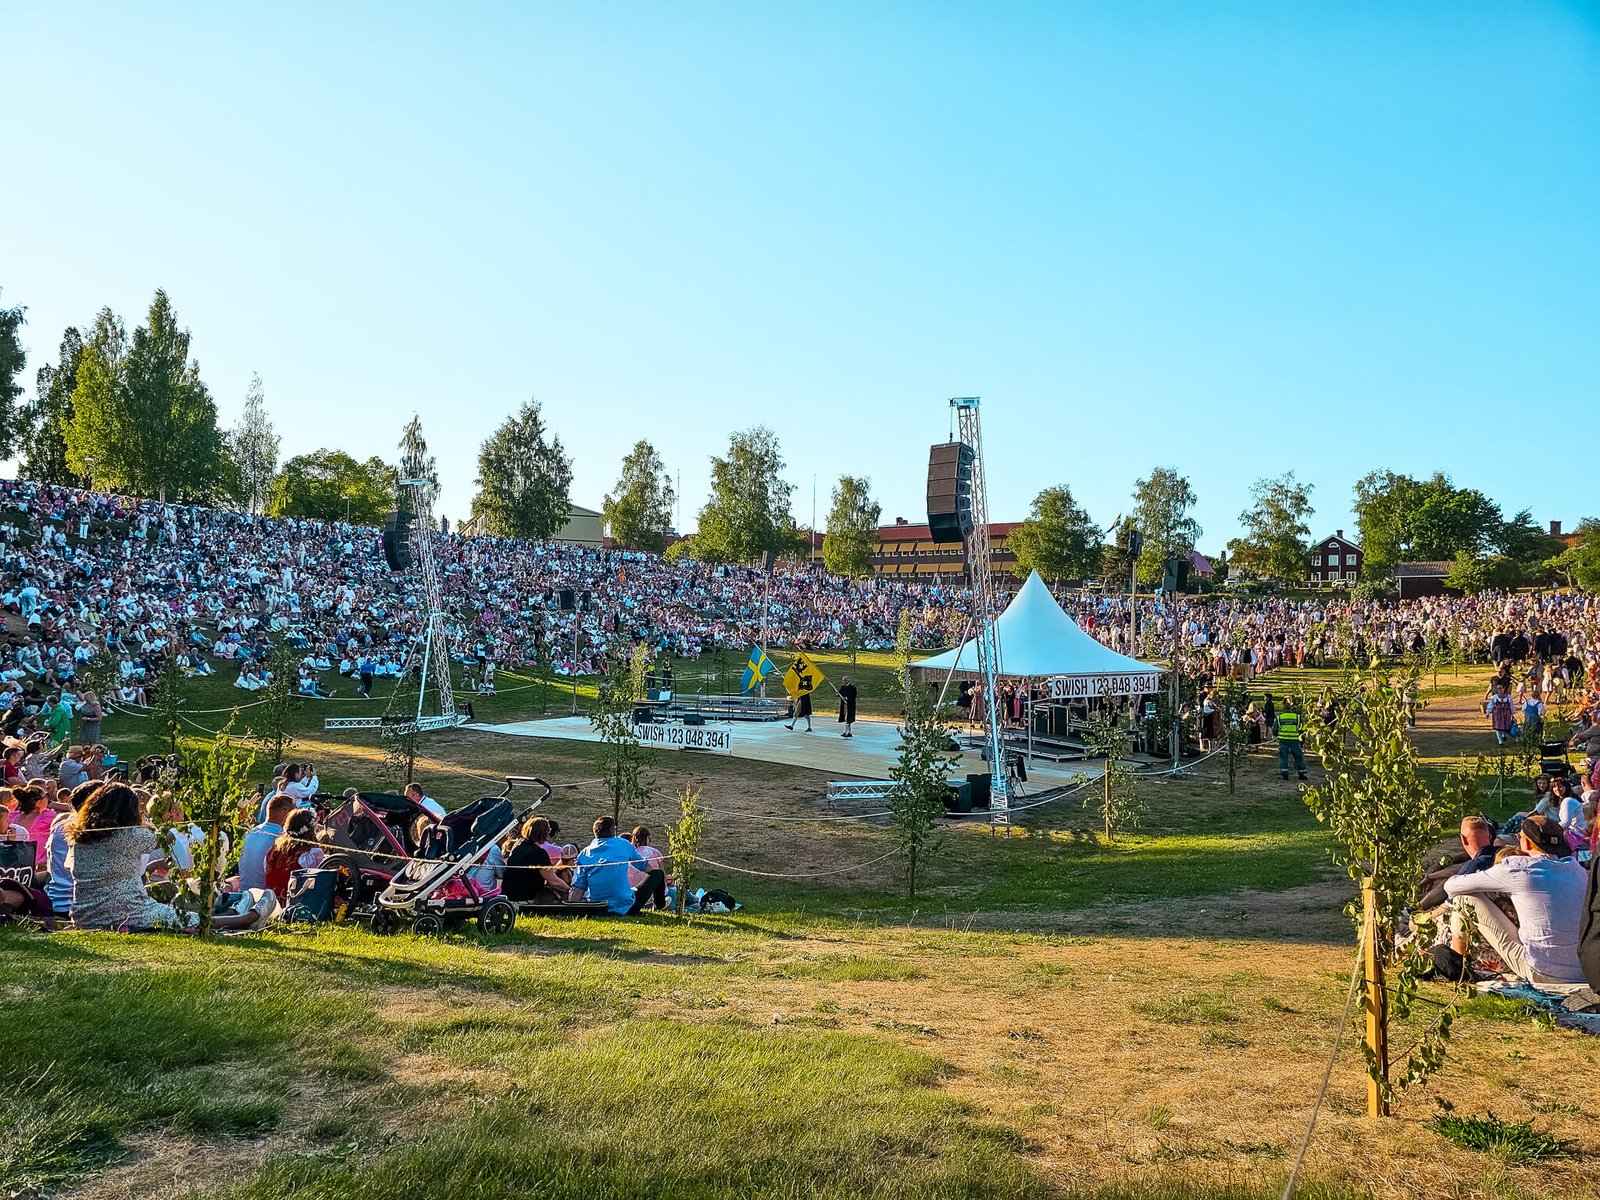 Dalarna, Midsummer celebrated in Sweden